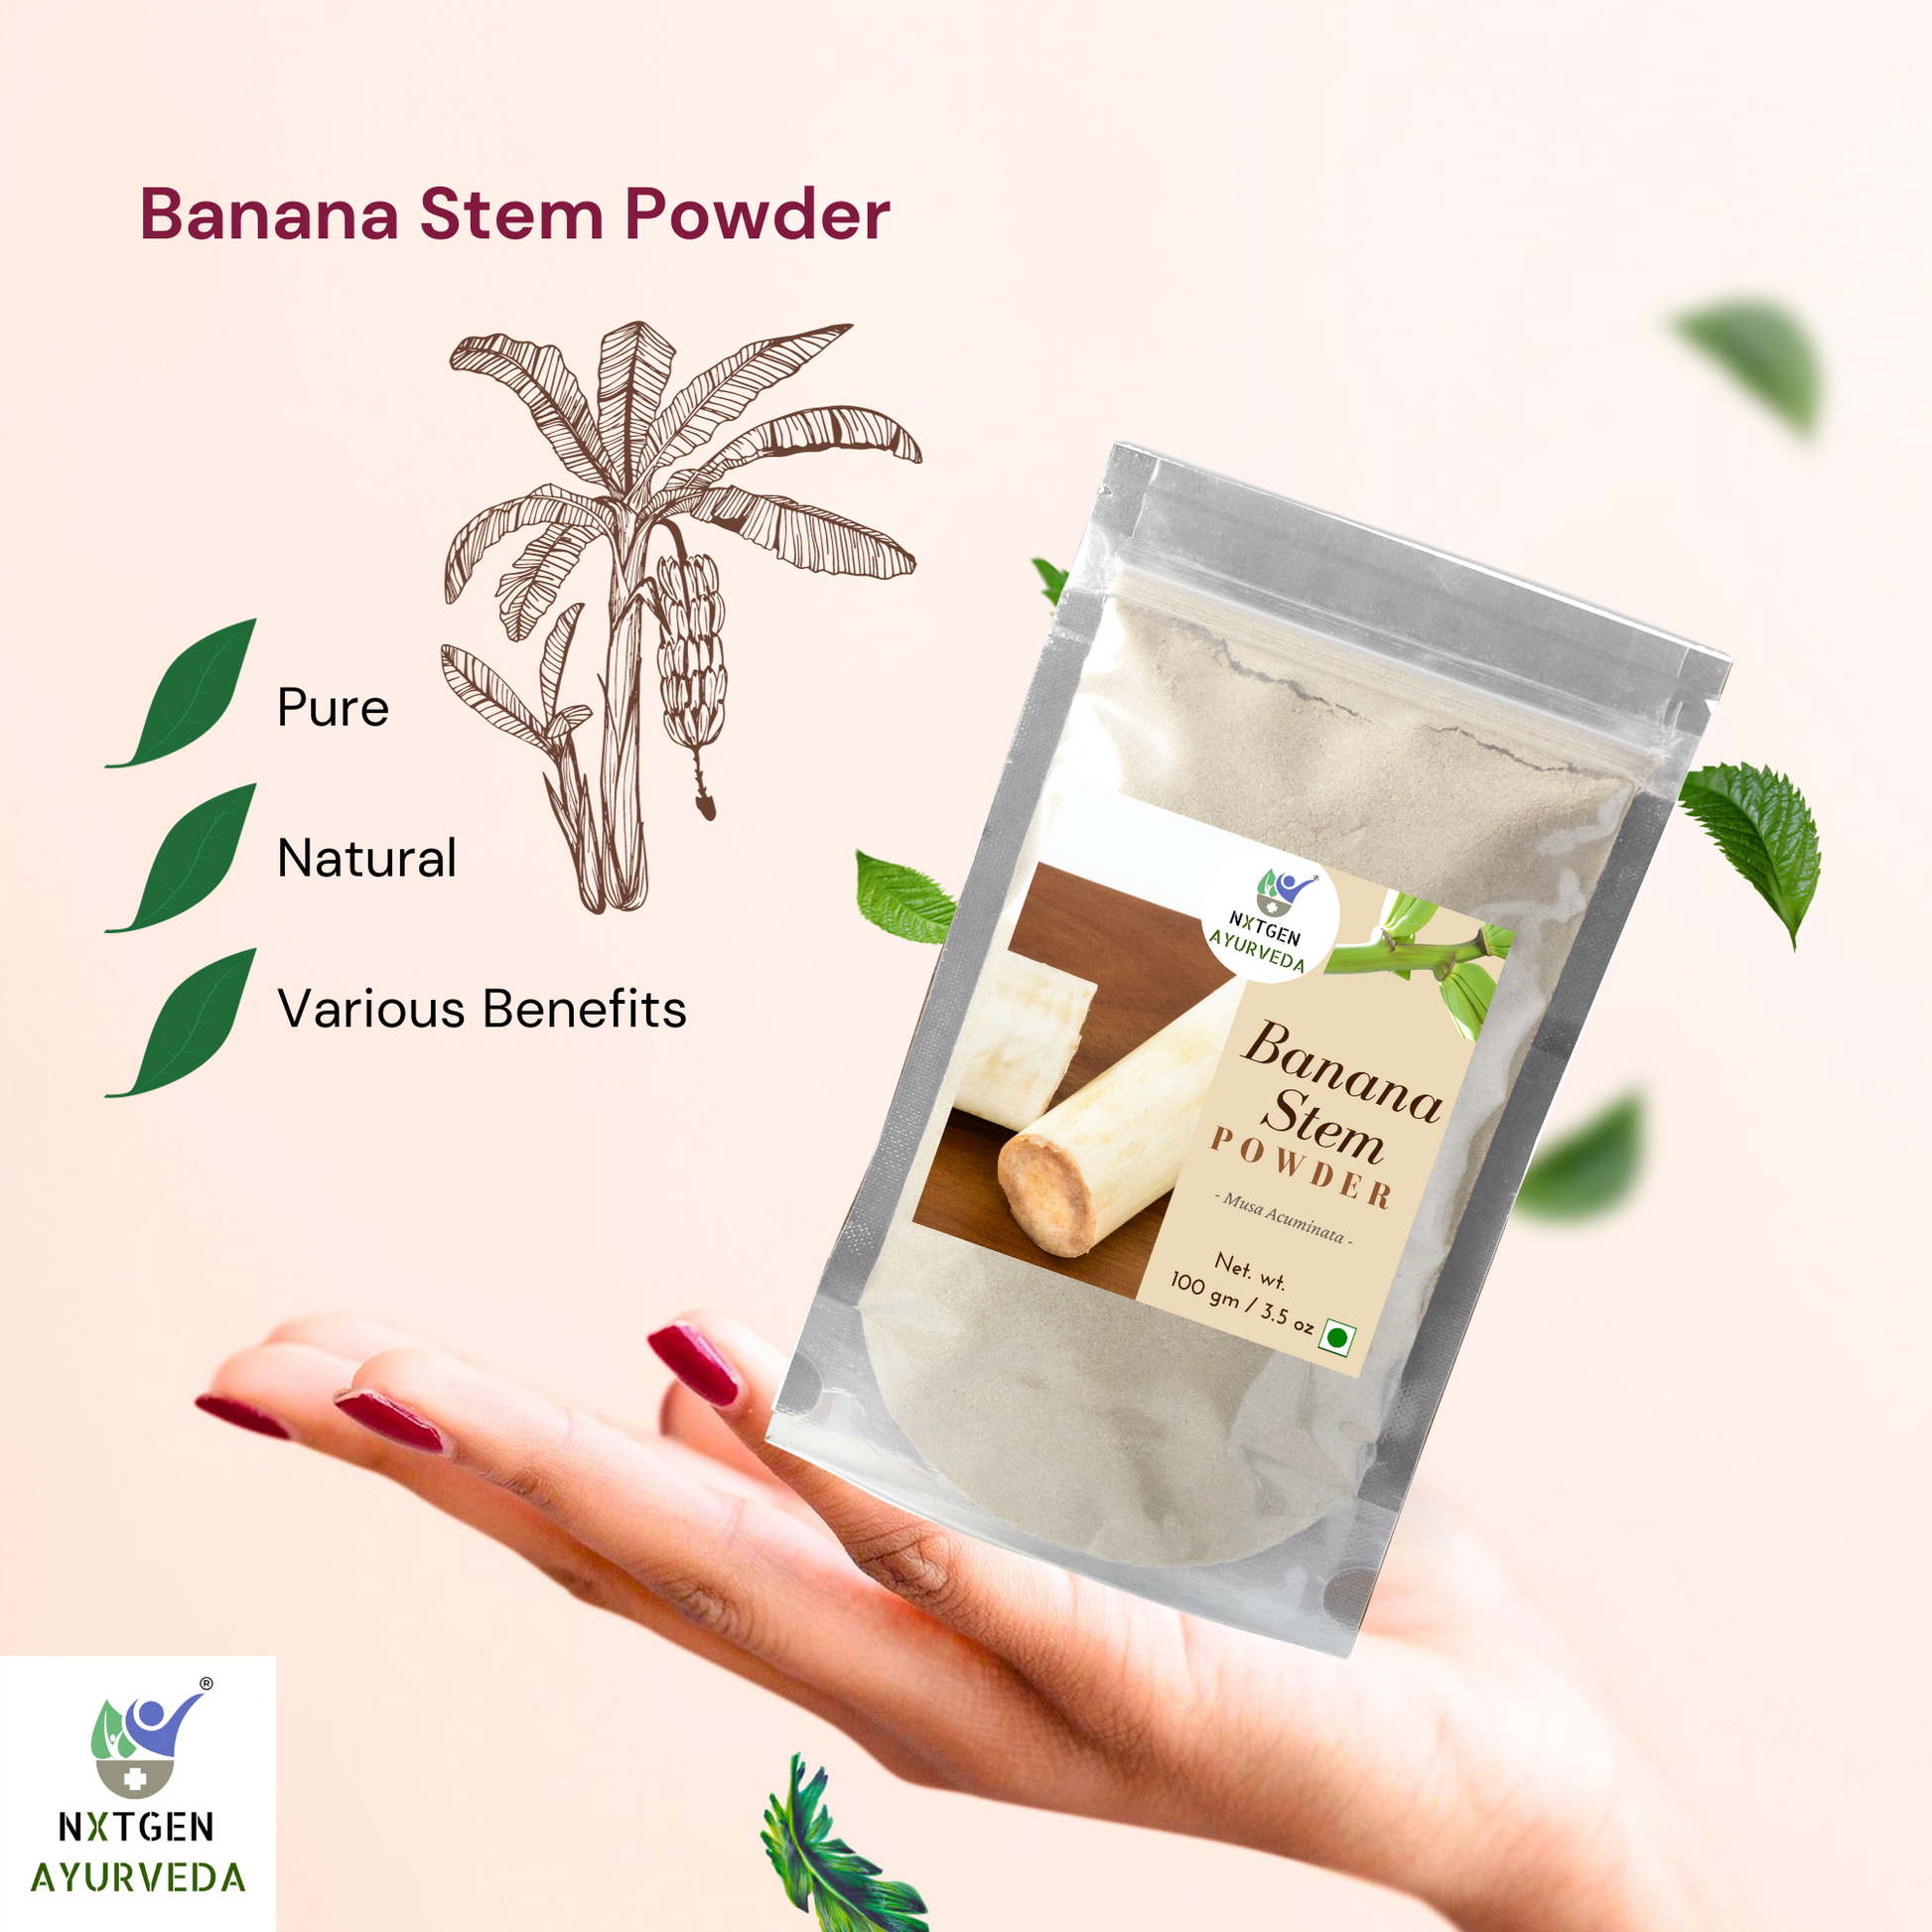 Buy banana stem powder